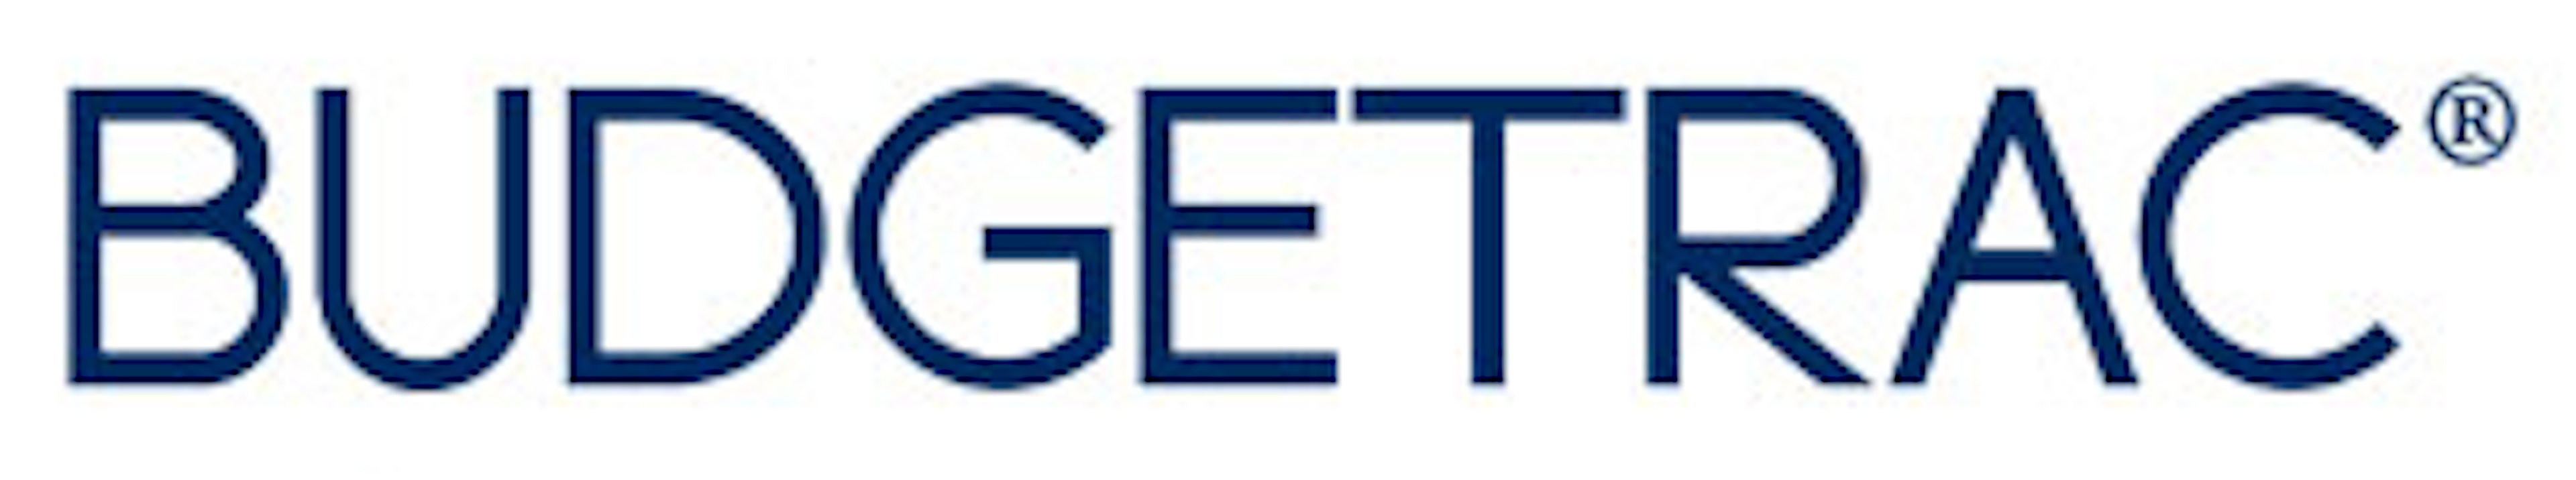 Budgetrac Real Estate Development Logo